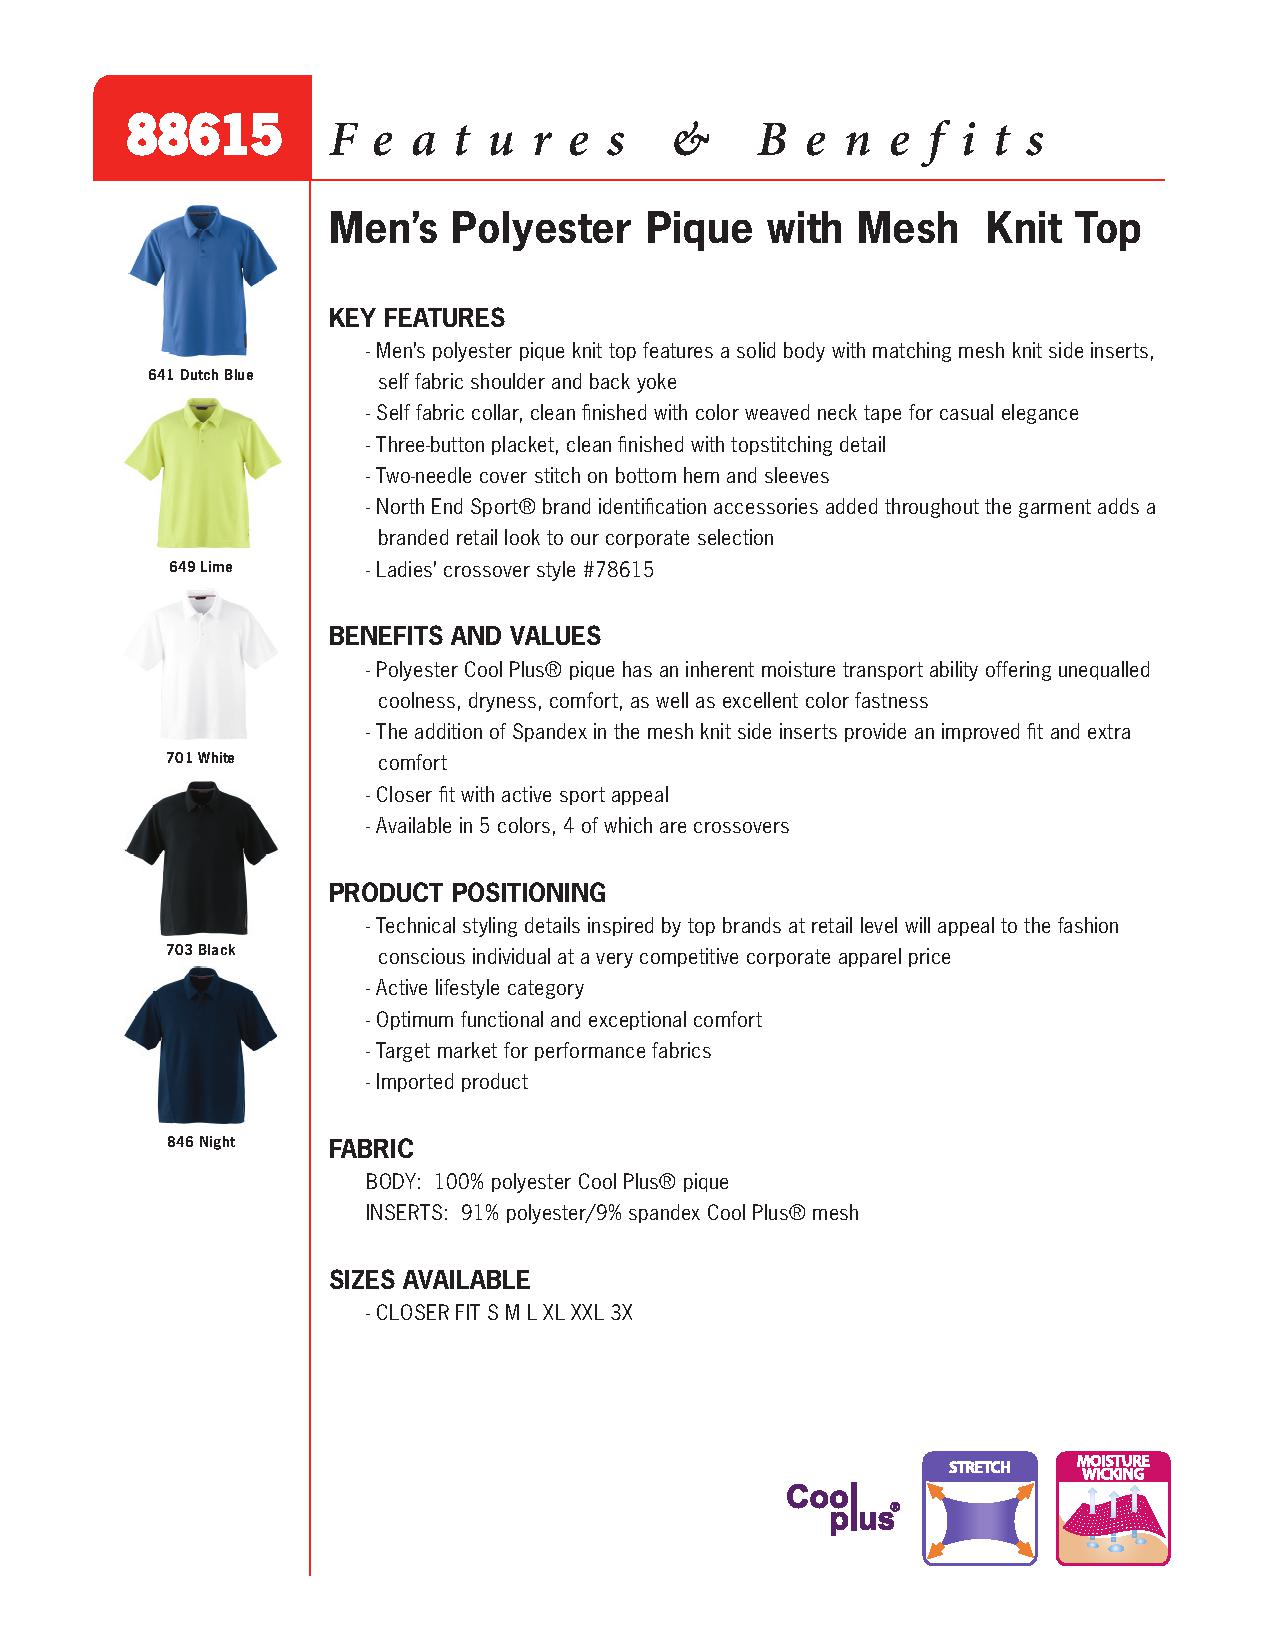 Ash City Pique 88615 - Men's Polyester Pique Polo With Mesh